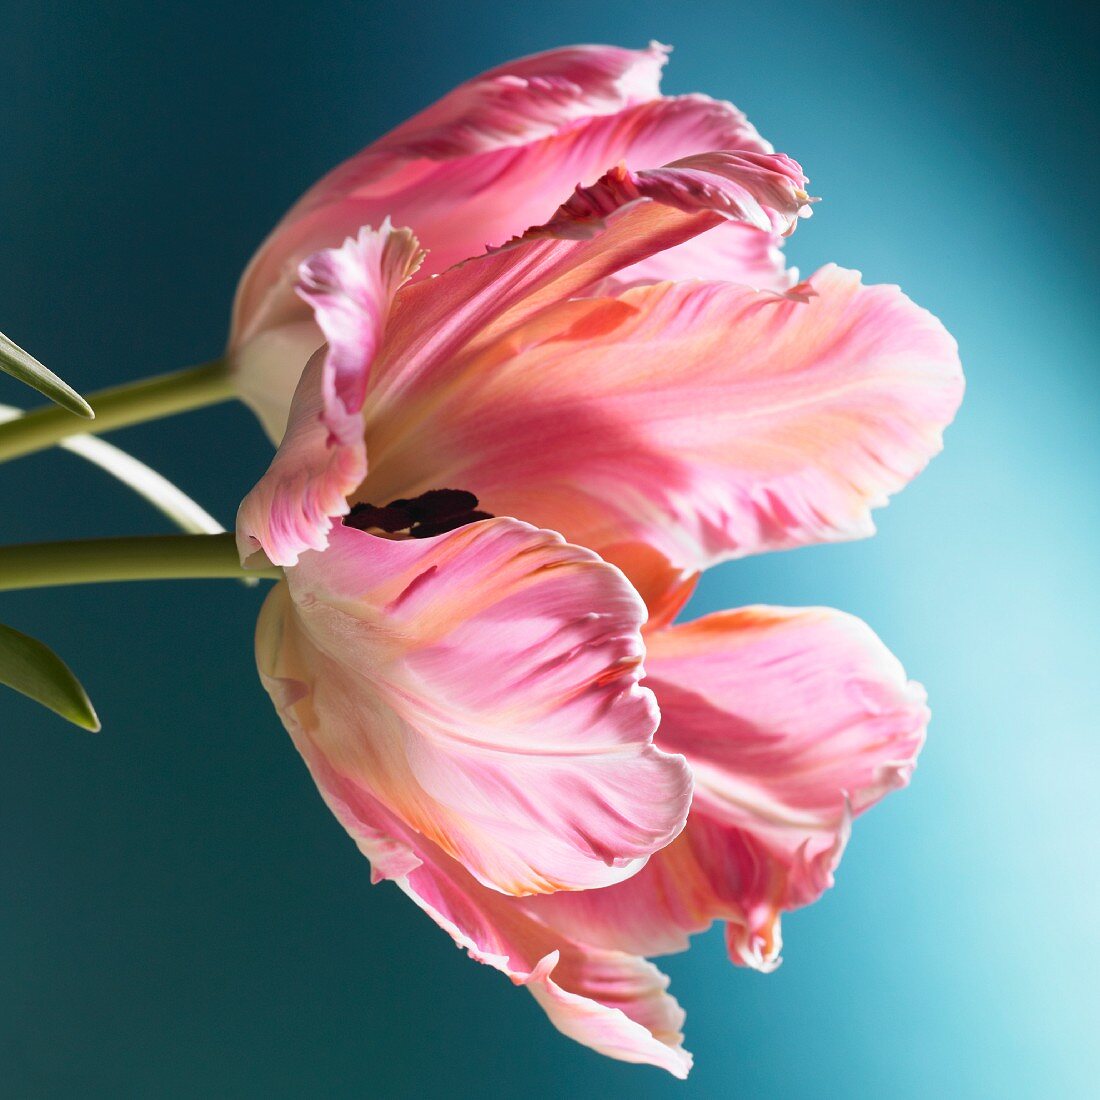 Eine rosa Tulpe